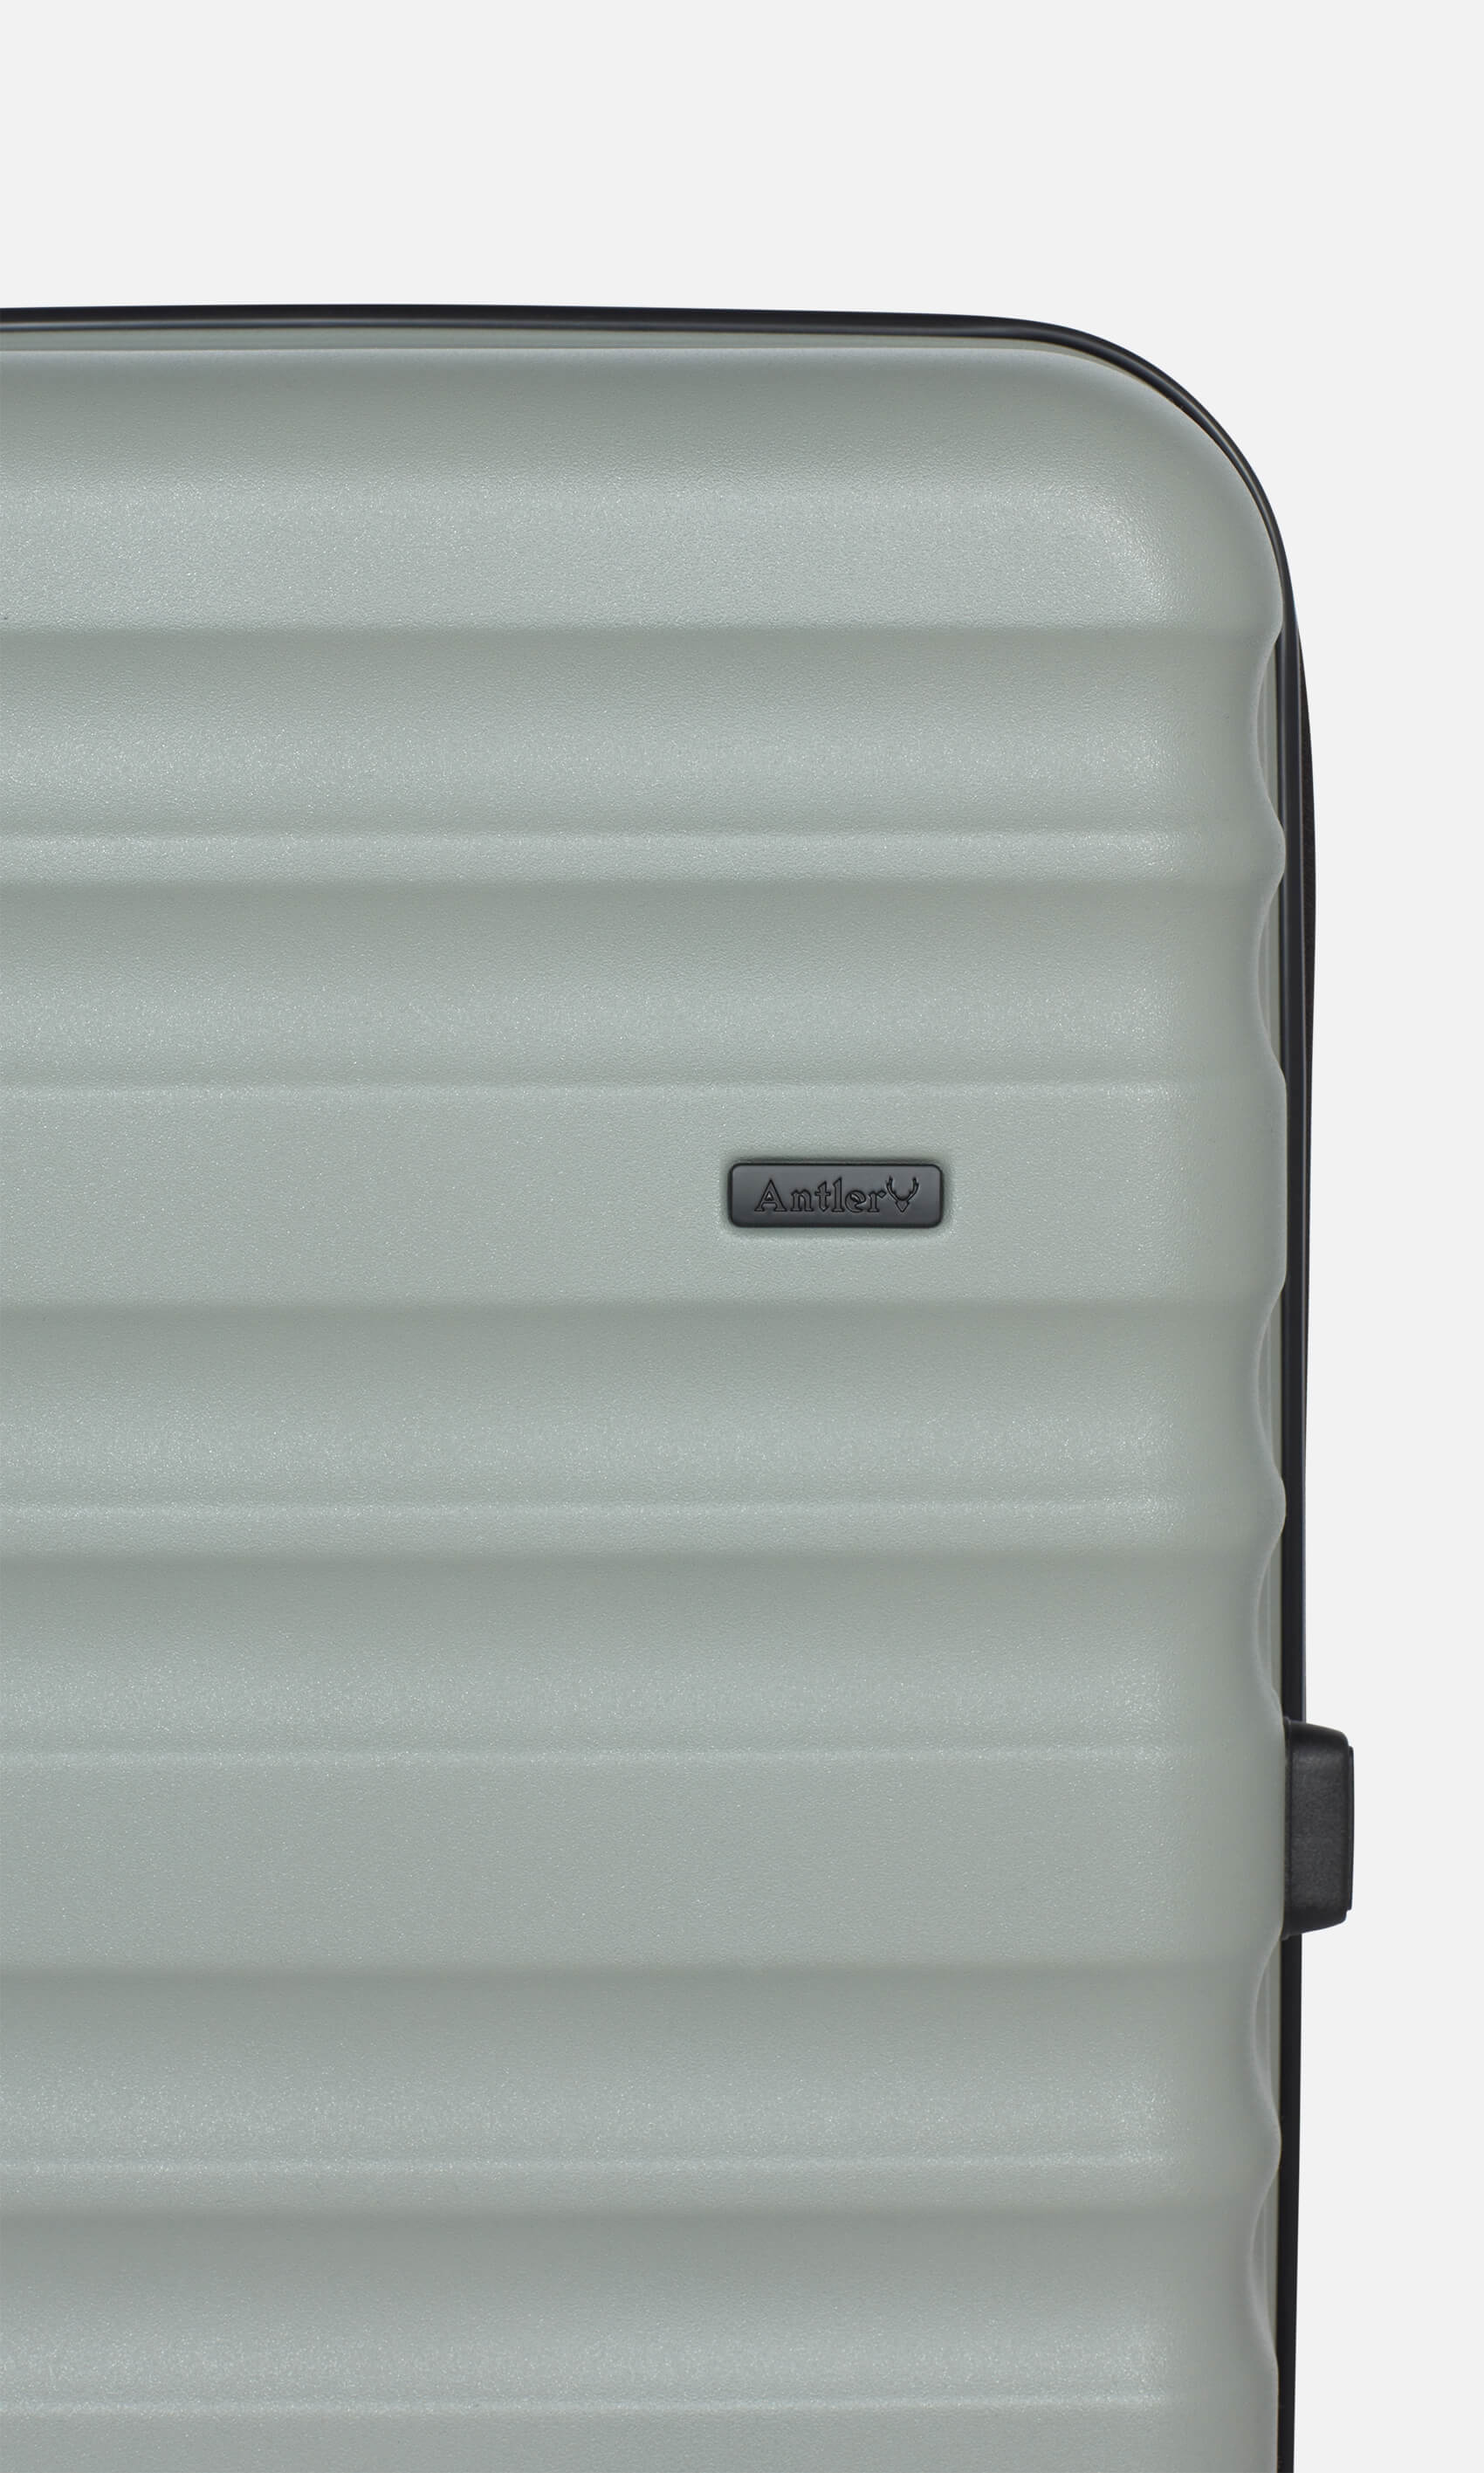 Antler Luggage -  Clifton medium in sage - Hard Suitcases Clifton Medium Suitcase Sage (Green) | Hard Suitcase | Antler UK